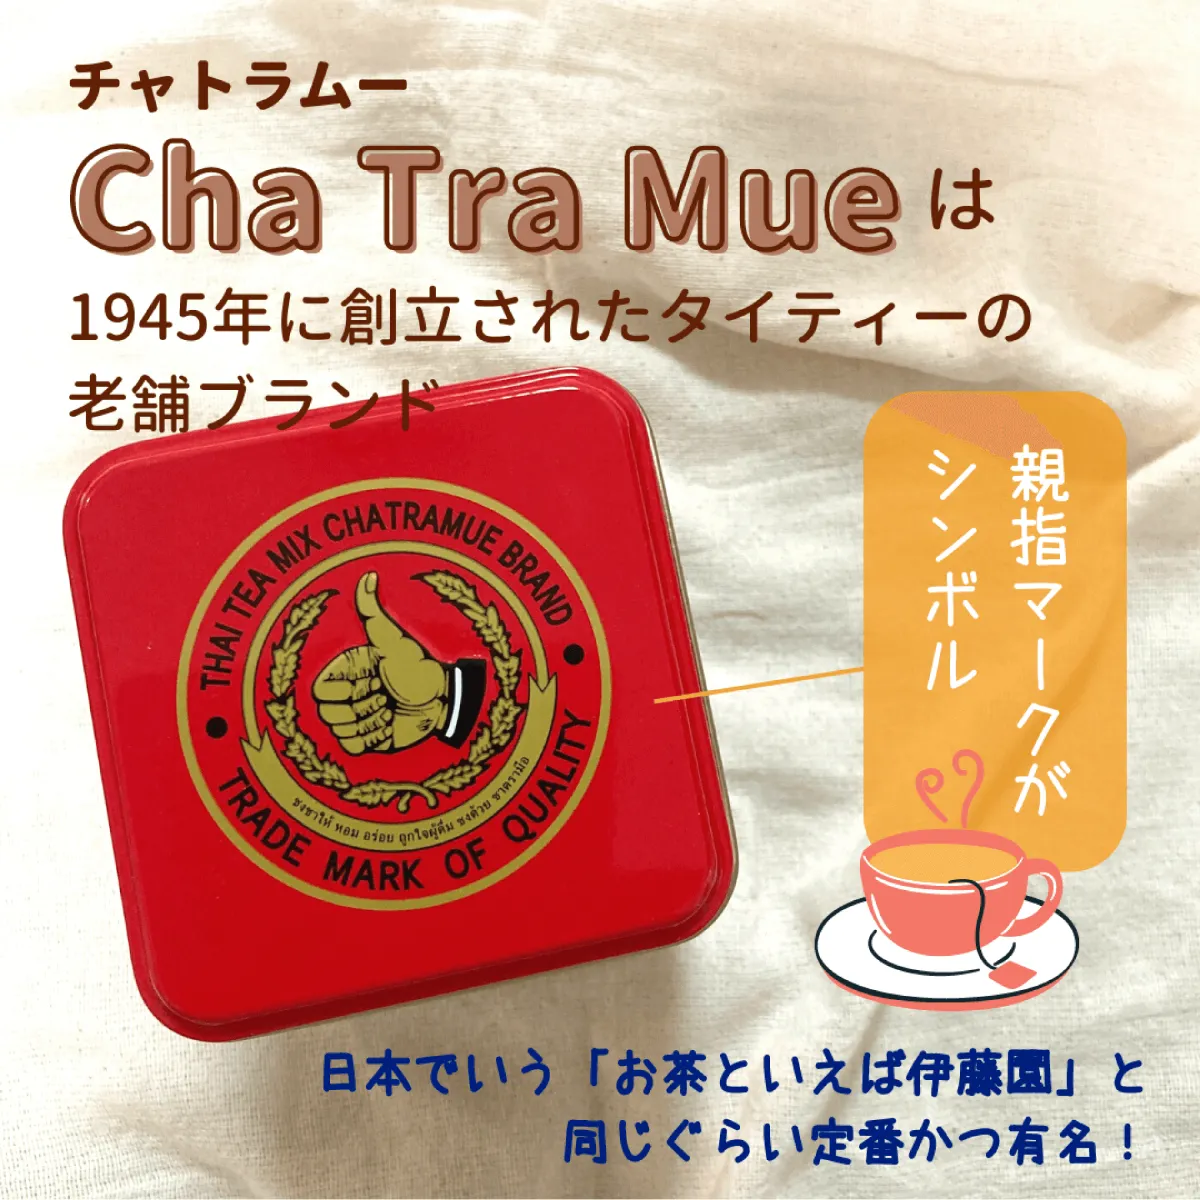 チャトラムー Cha Tra Mue は1945年に創立されたタイティーの老舗ブランド　親指マークがシンボル　日本でいう「お茶といえば伊藤園」と同じくらい定番かつ有名！